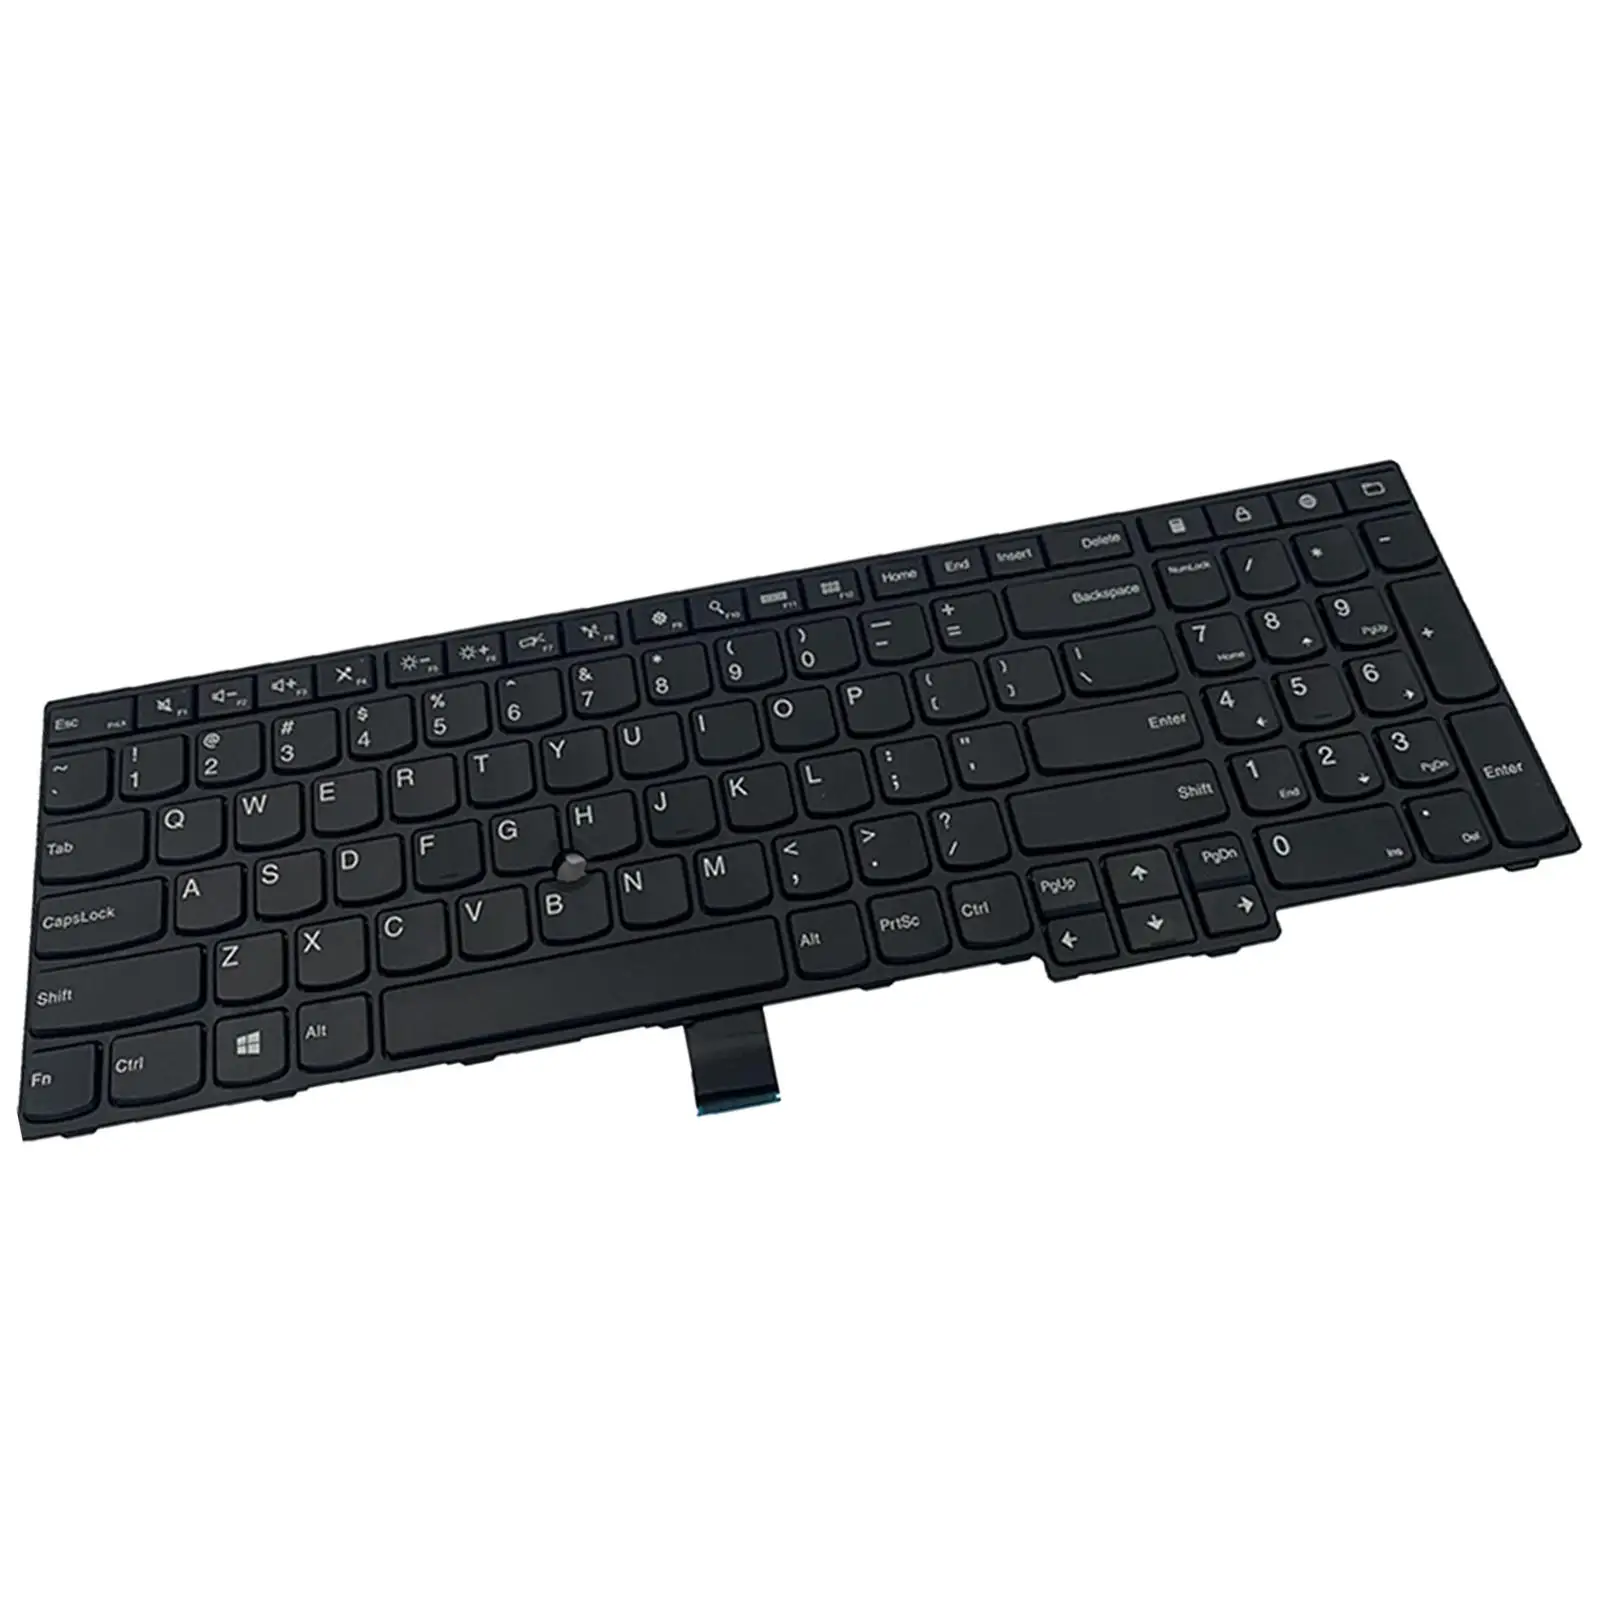 Laptop Keyboard US Layout Replacement Keyboard for ThinkPad E550 E555 E550C E560 E565 SN20F22474 00Hn000 00Hn07 04Y0313 04Y0301